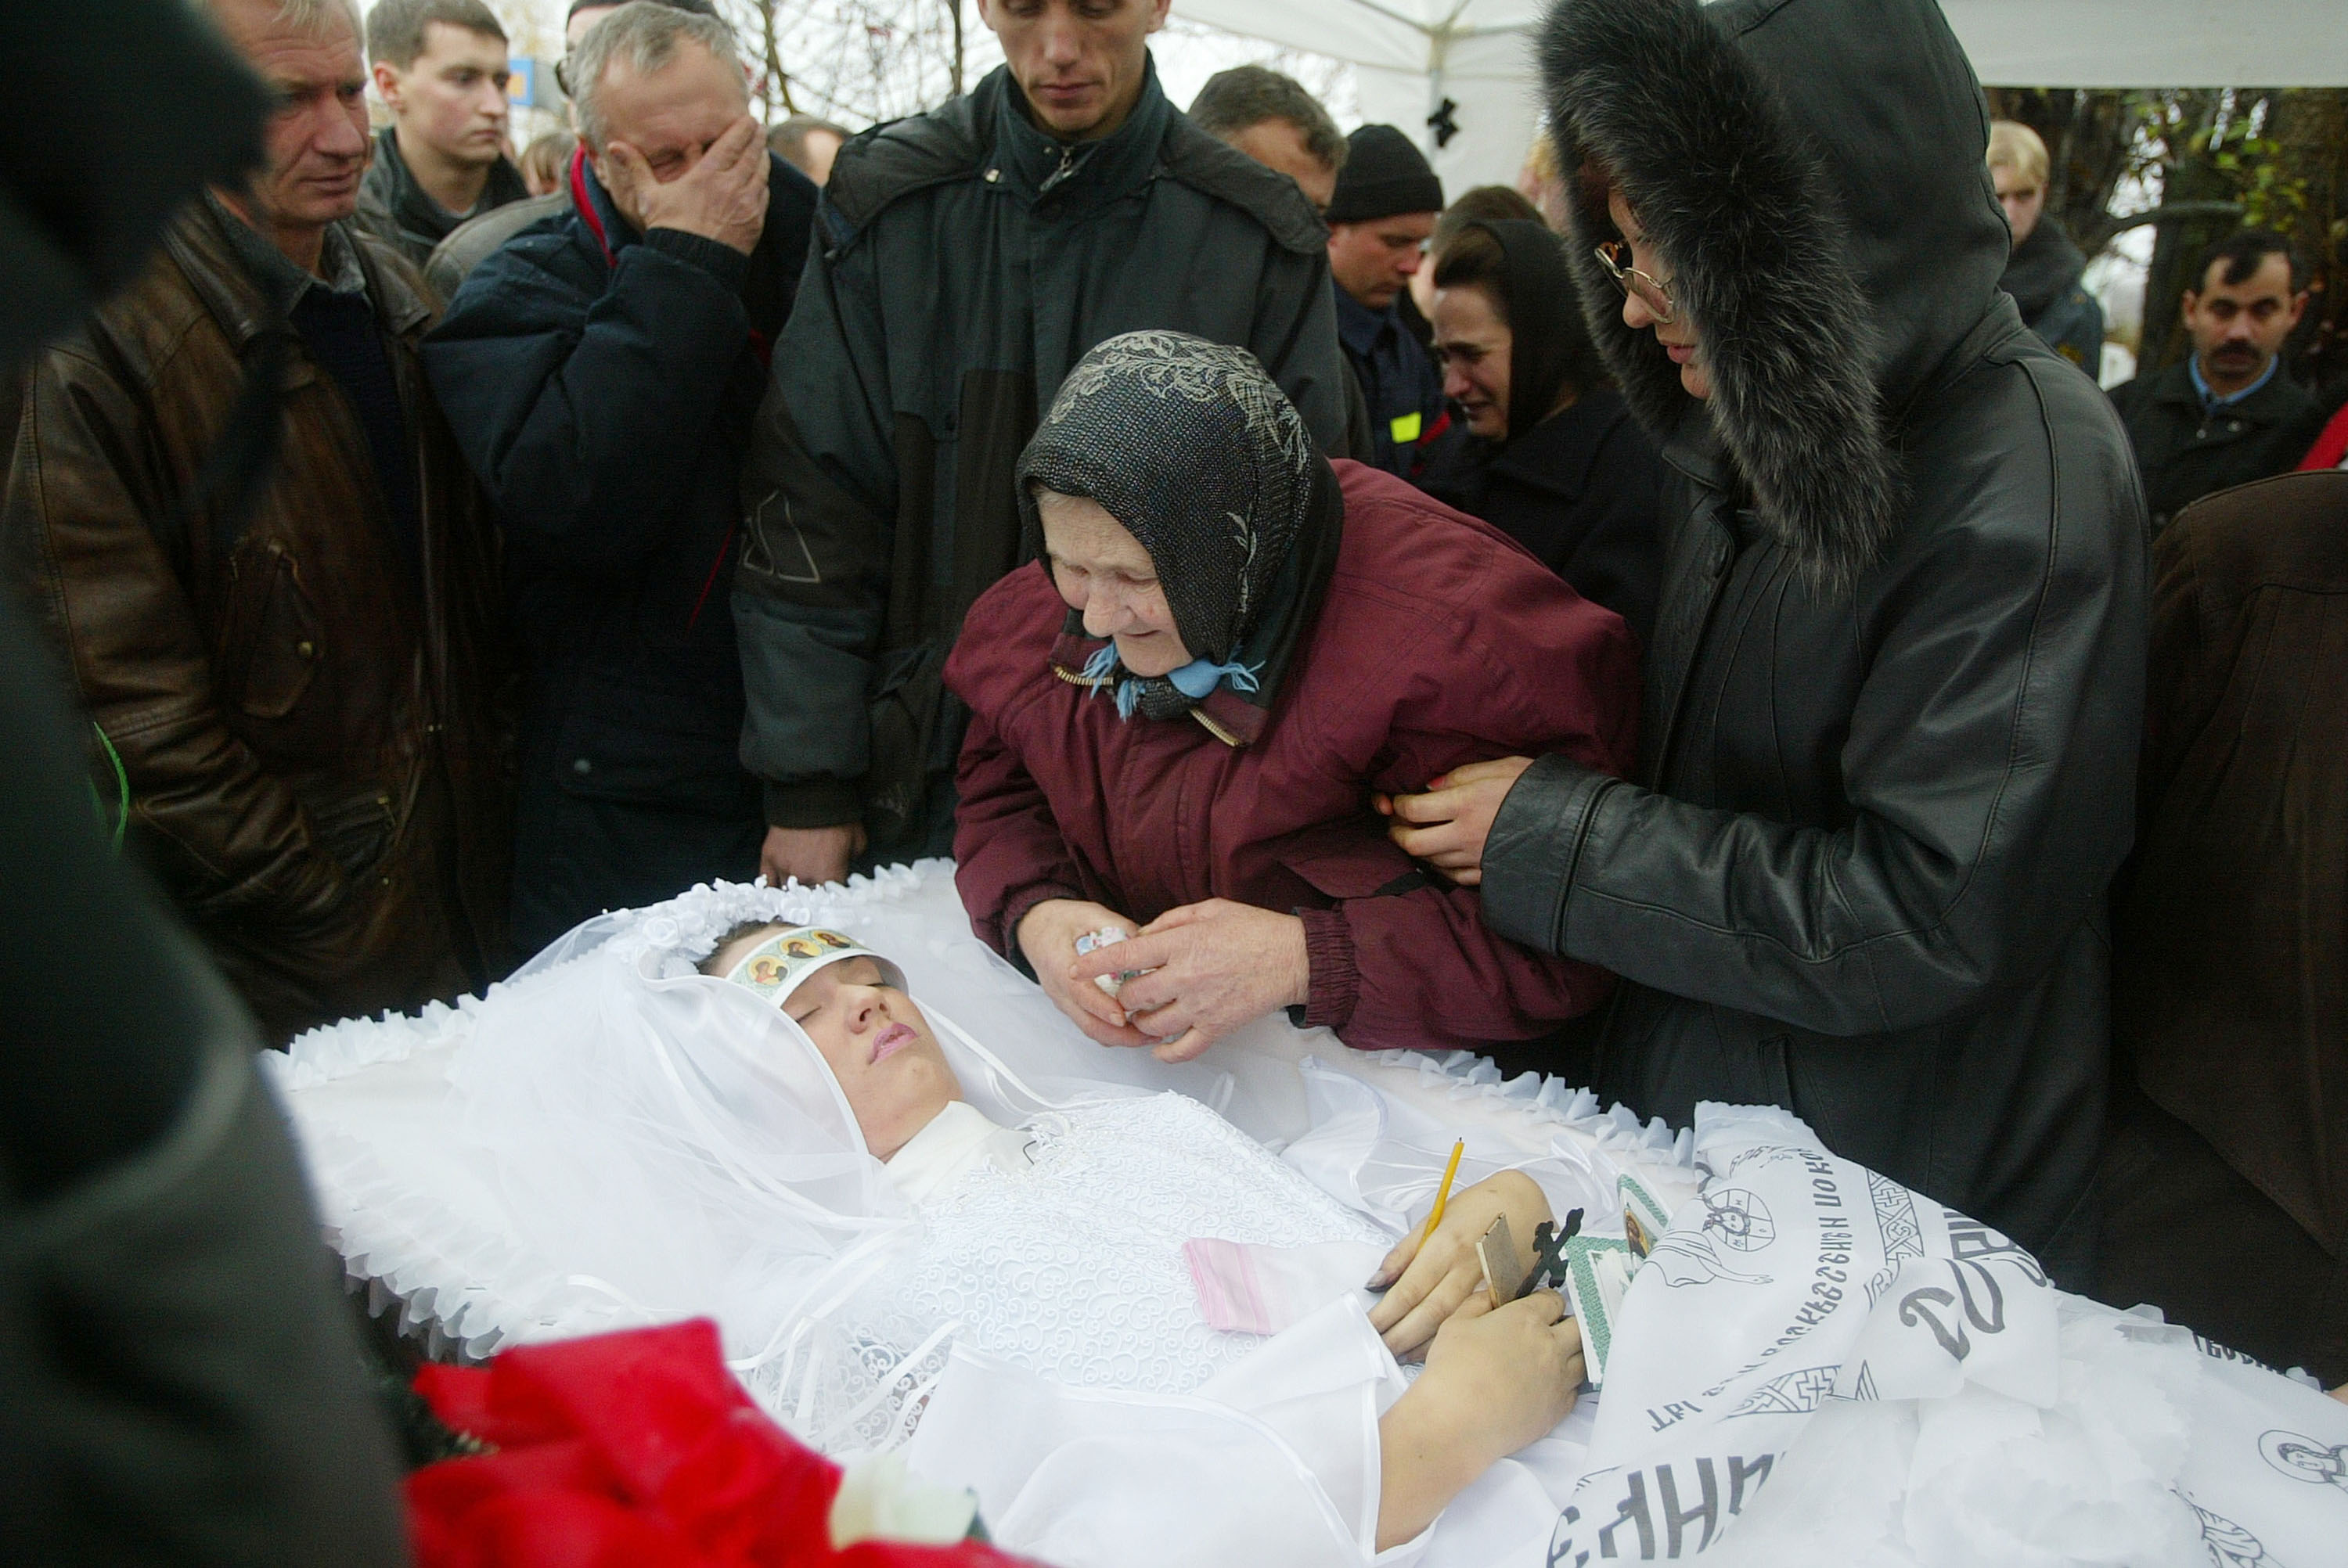 30 de octubre de 2002: el velatorio de Elizabeth Starkov, de 16 años, durante su funeral y el de su padre, el policía Alexander Starkov, de 39, Ambos murieron por los efectos de los gases lanzados por las fuerzas especiales, un mal menor, según las autoridades  (Photo by Pascal Le Segretain/Getty Images)